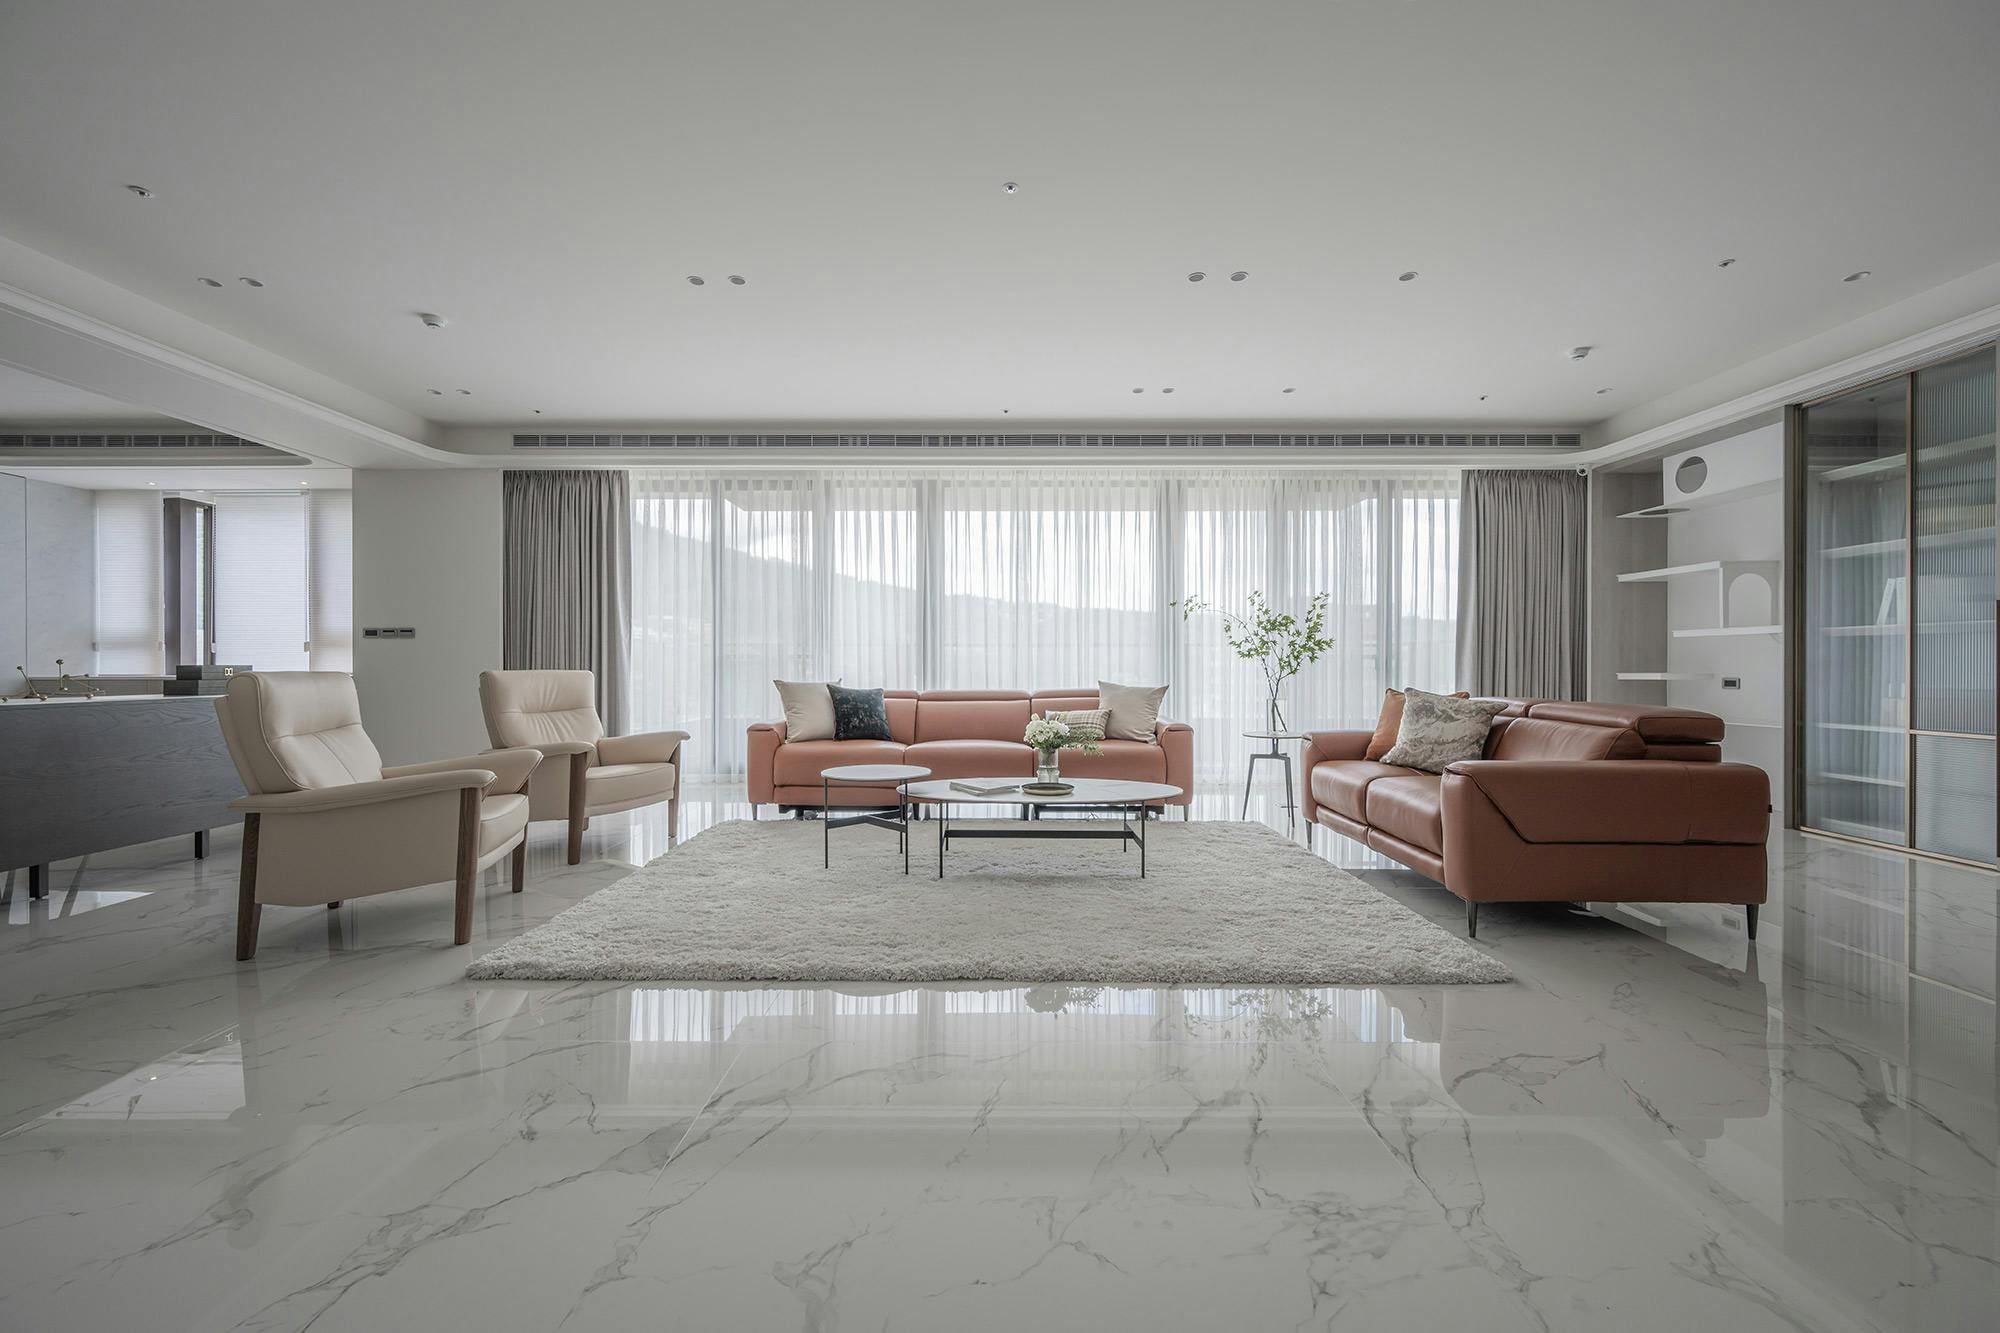 Numero immagine 34 della sezione corrente di High-end homes with a modern design and durable materials di Cosentino Italia